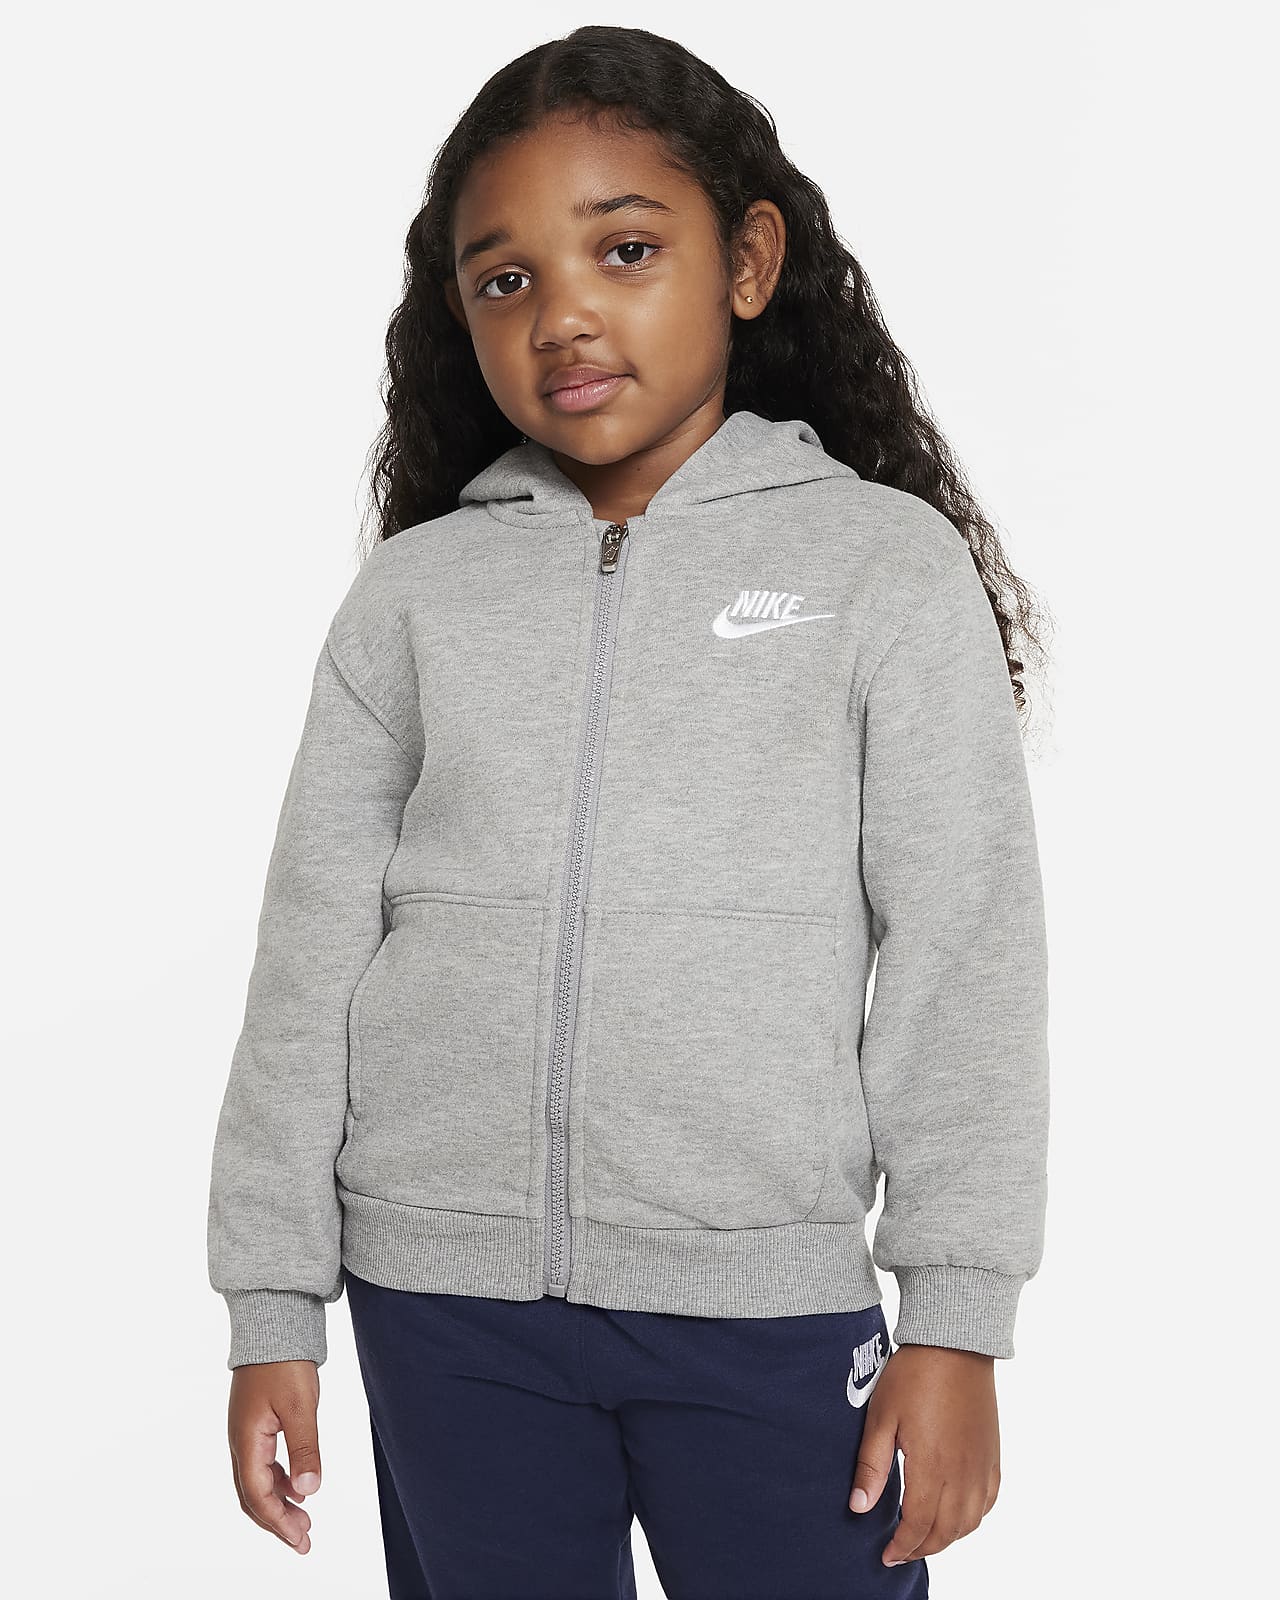 Hoodie. Little Full-Zip Club Nike Fleece Kids Sportswear